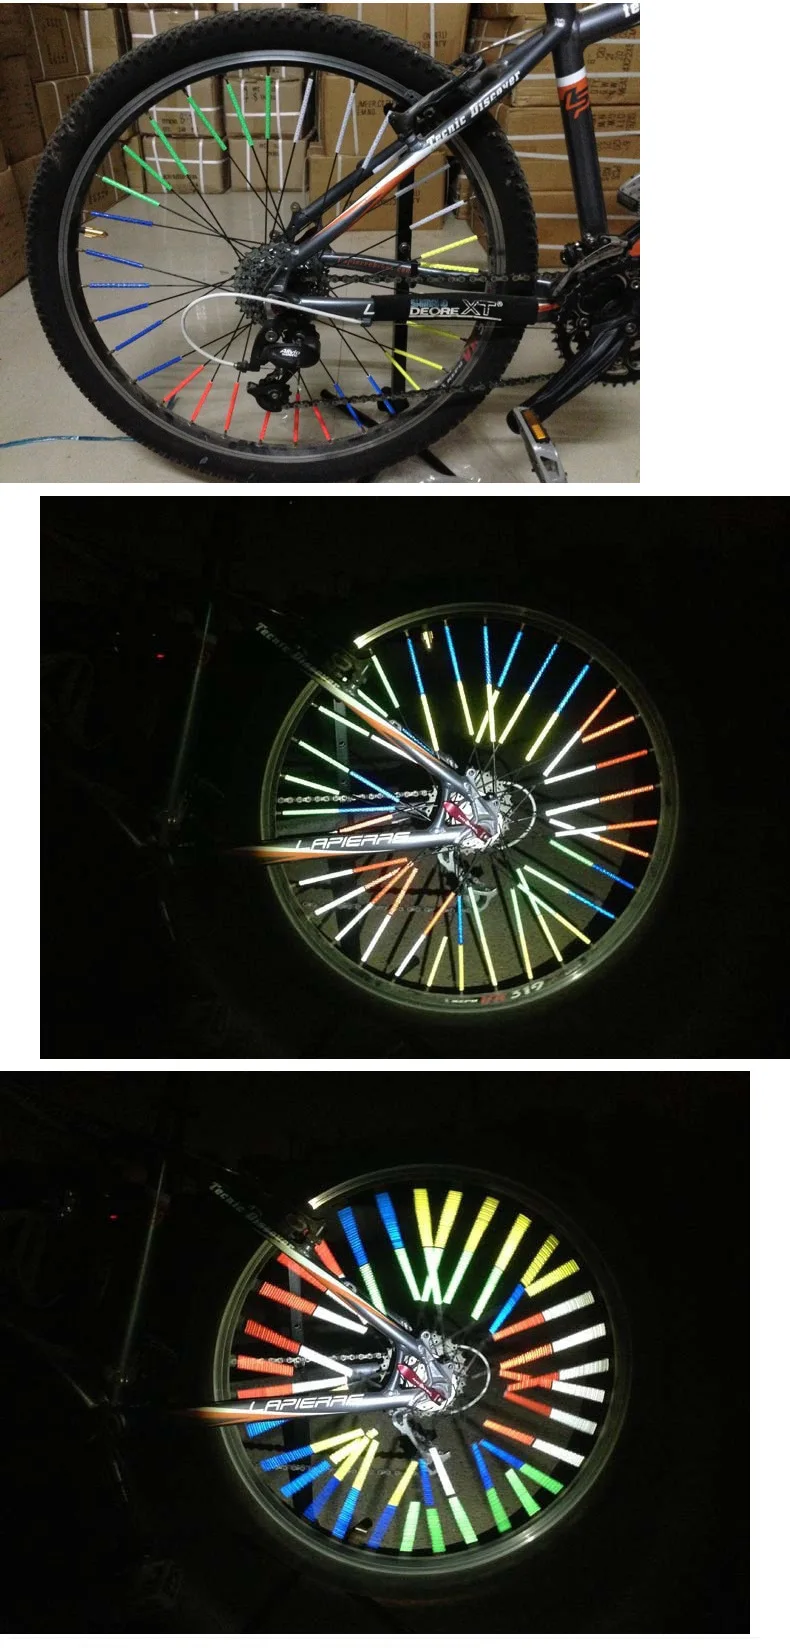 12 Adet bisiklet ışığı reflektörlü, yansıtıcı gece jant, konuştu kelepçe tüp, güvenlik uyarı ışığı, bisiklet bisiklet çubuğu, reflectiv Görüntü  2